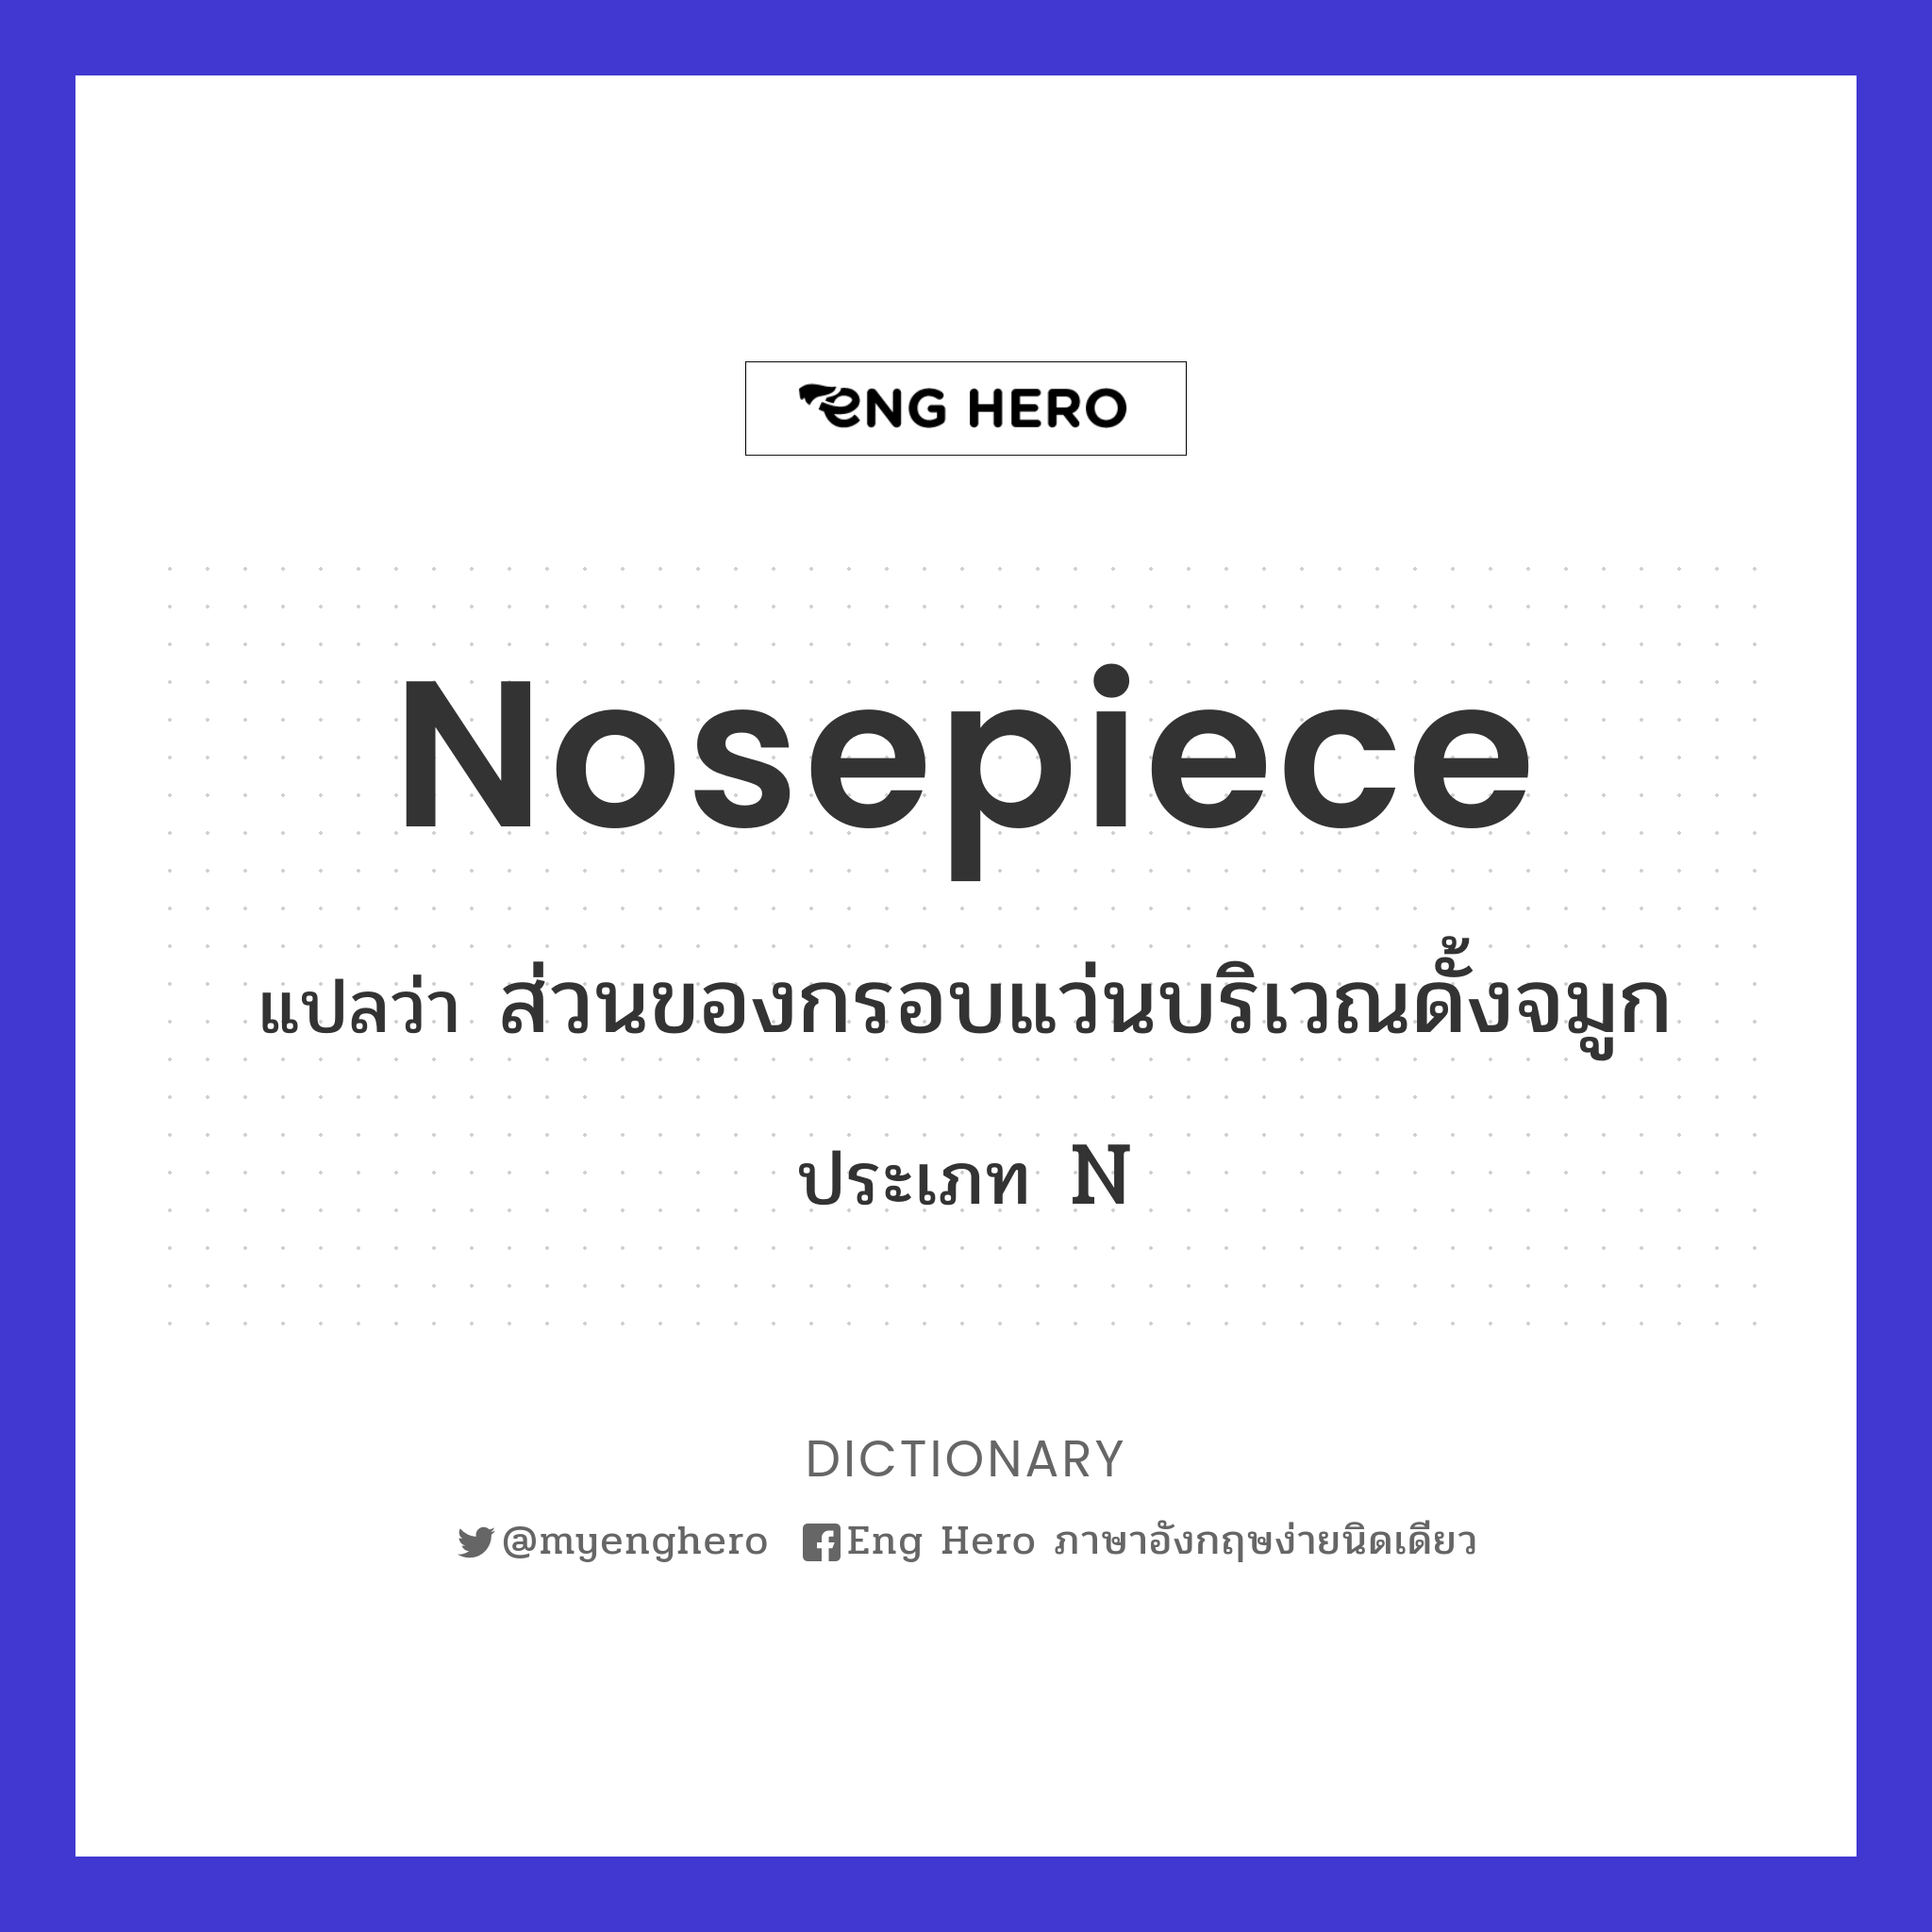 nosepiece